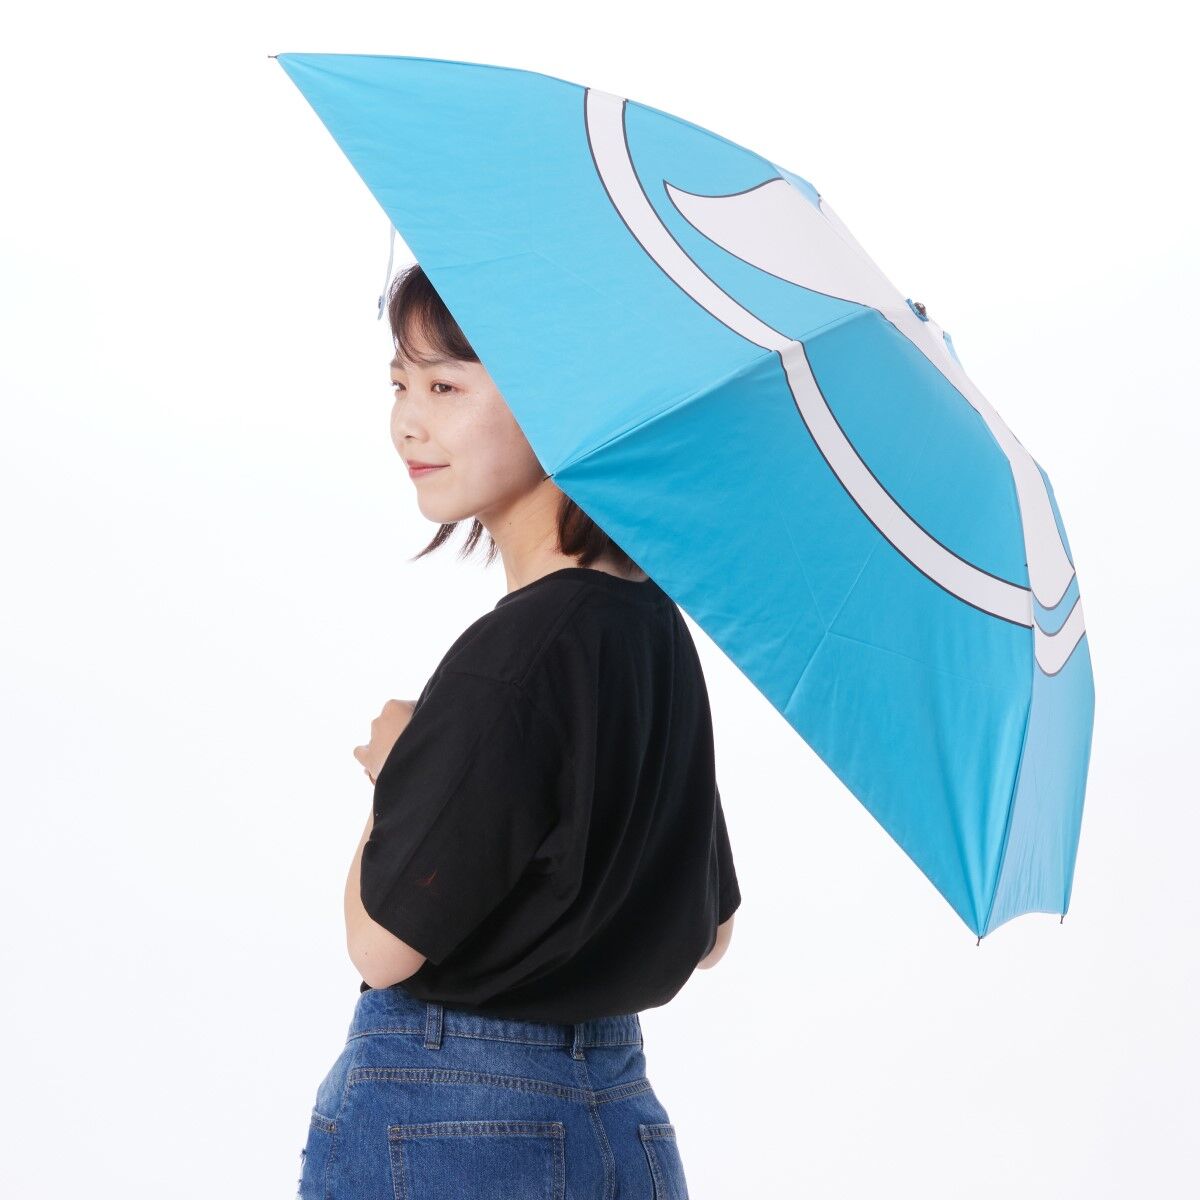 Hurricaneger Umbrella